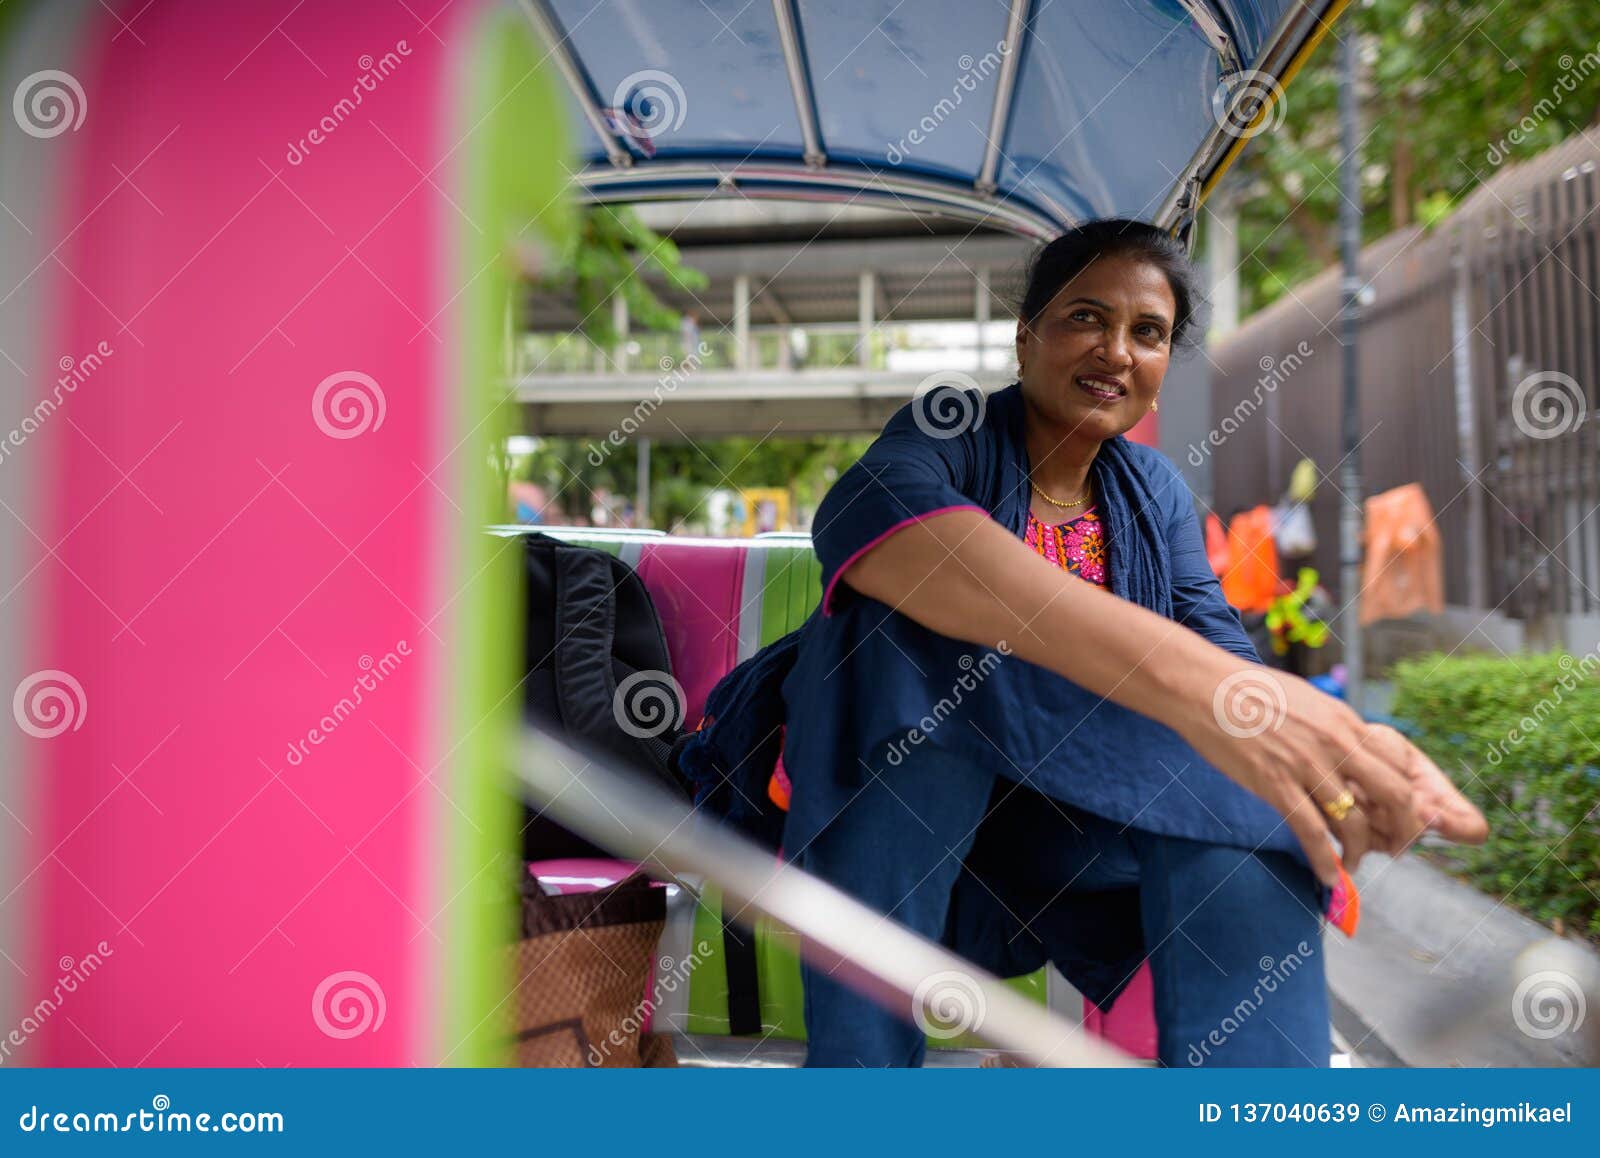 Mature Beautiful Indian Woman Sitting in Tuk Tuk Stock Image - Image of